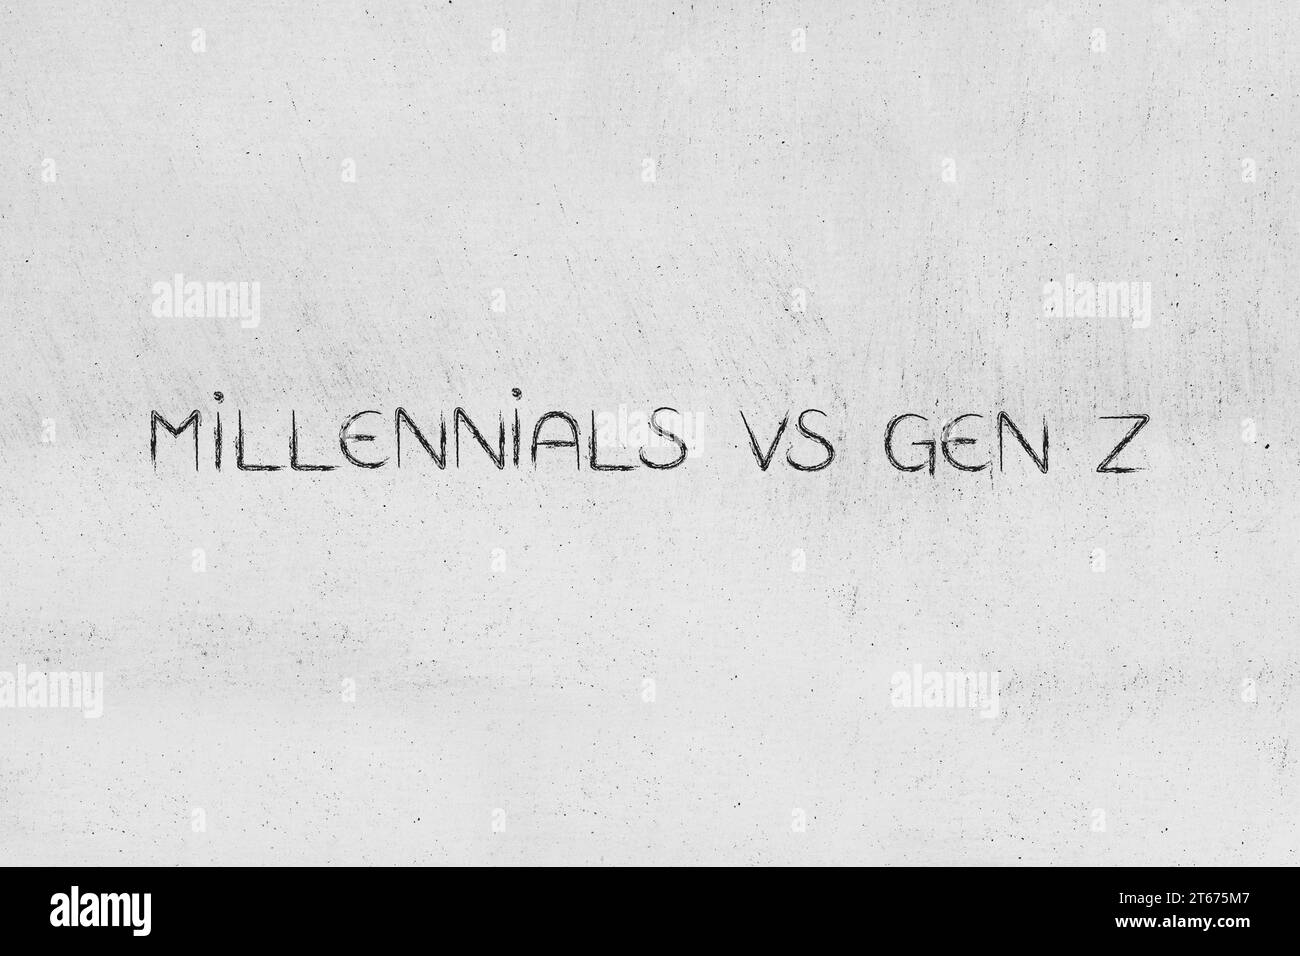 générations dans la société, millennials vs gen z text Banque D'Images